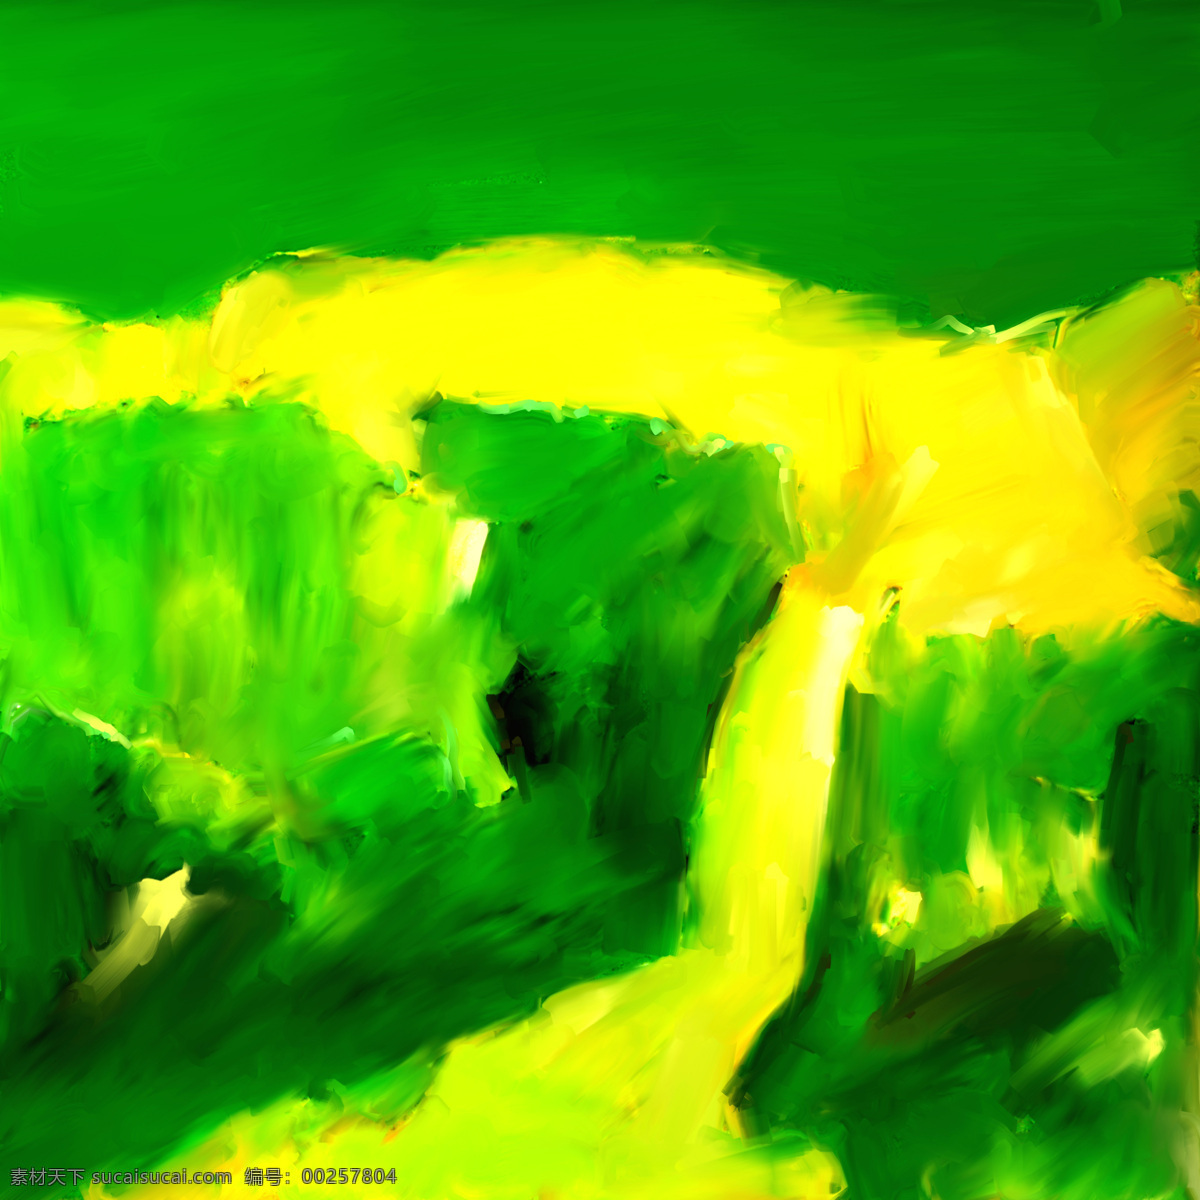 绿色 油画 笔触 抽象画 油画笔触 印象派油画 油画写生 装饰画 无框画 油画艺术 绘画艺术 书画文字 文化艺术